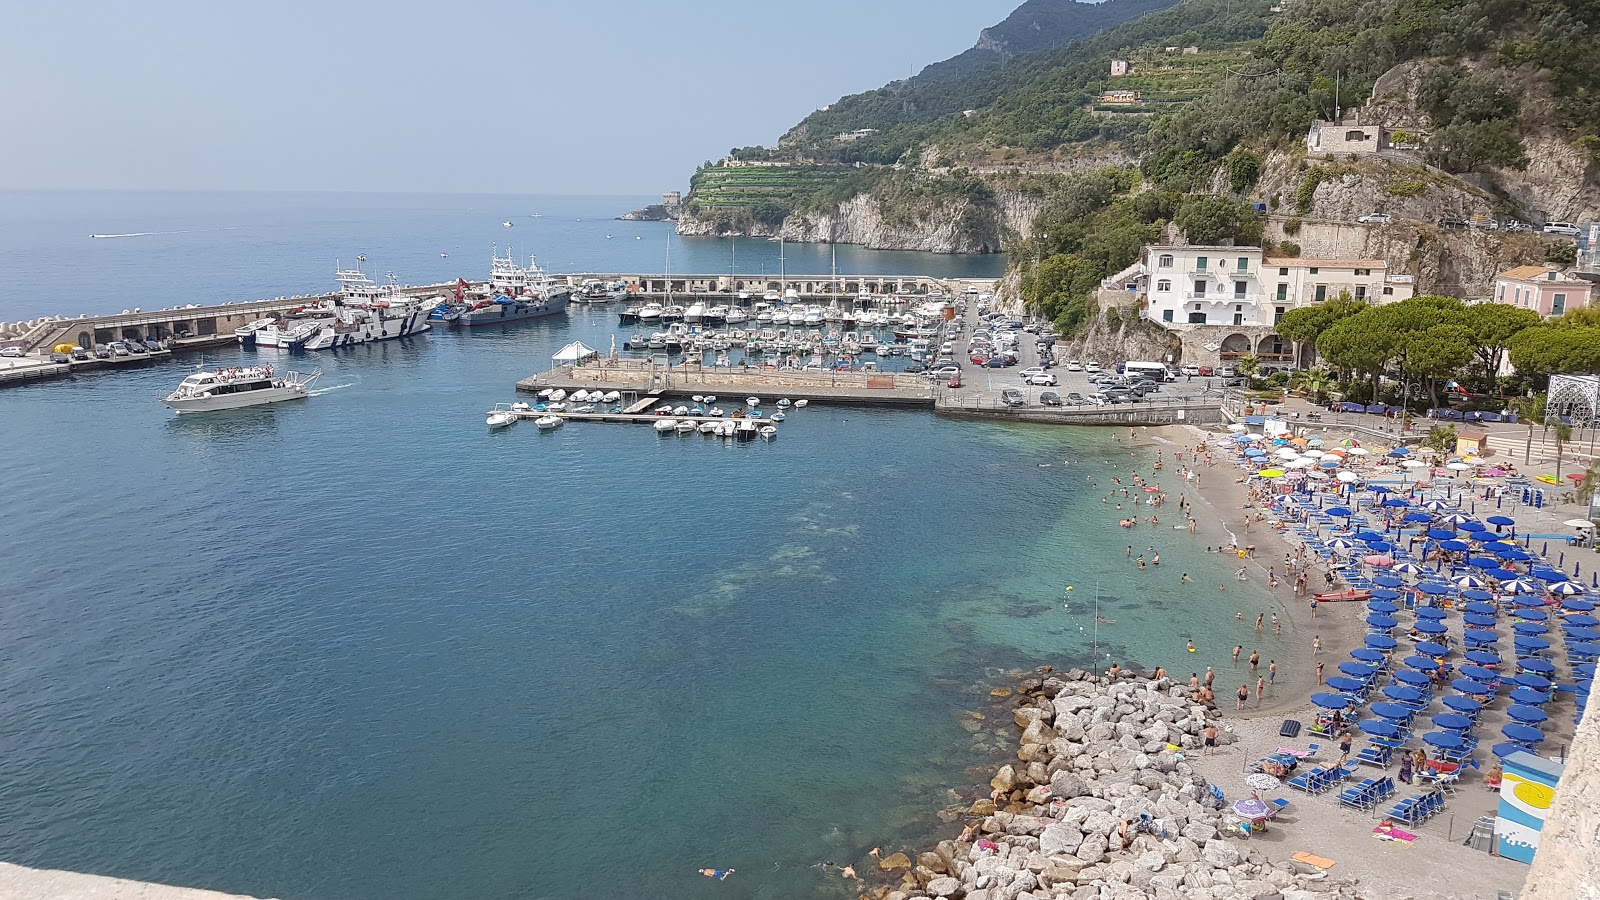 Spiaggia di Cetera'in fotoğrafı gri ince çakıl taş yüzey ile